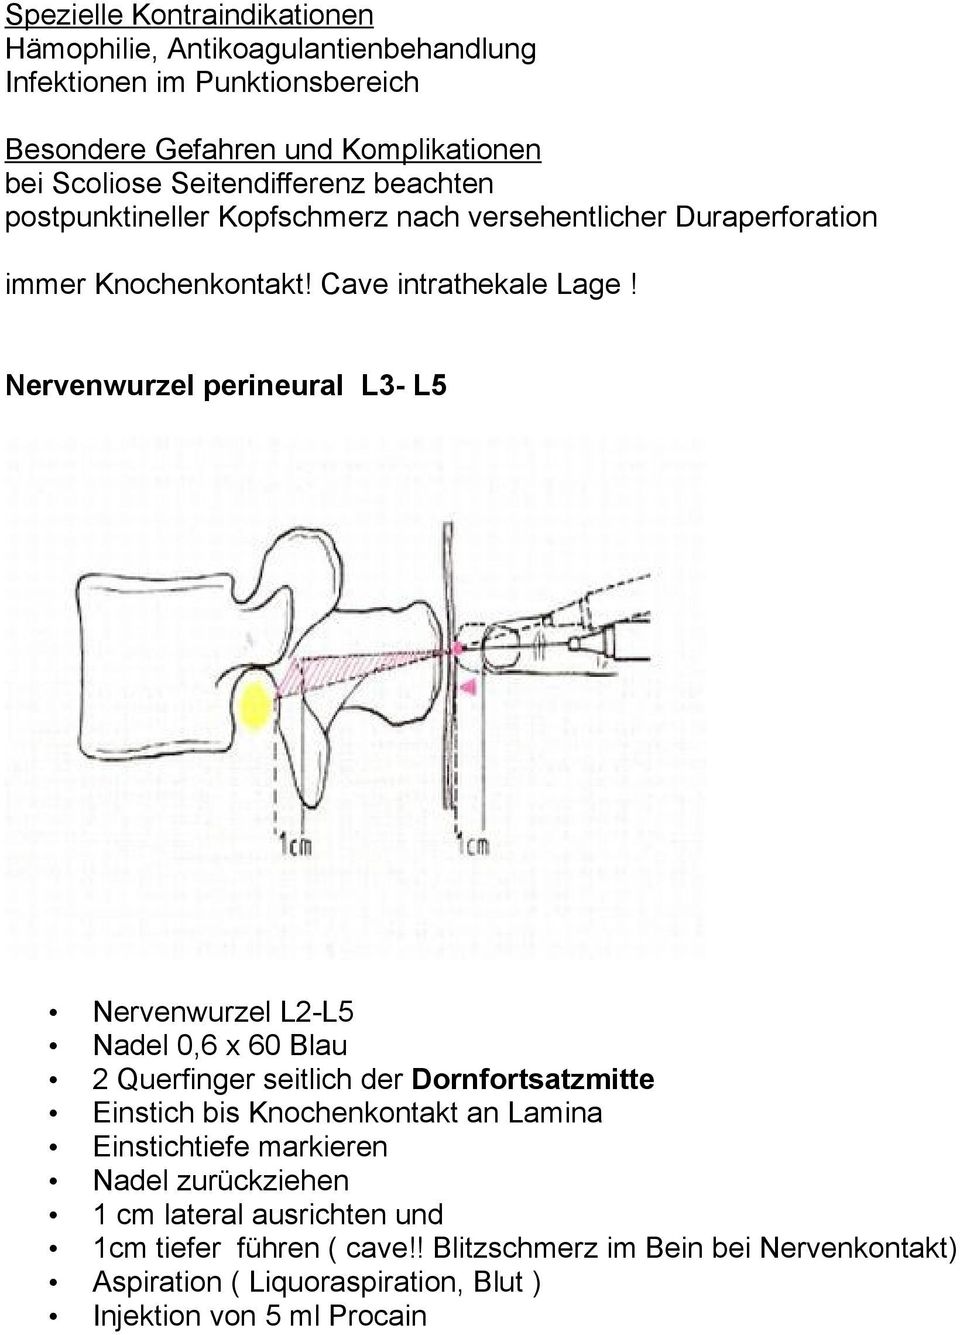 Nervenwurzel perineural L3- L5 Nervenwurzel L2-L5 Nadel 0,6 x 60 Blau 2 Querfinger seitlich der Dornfortsatzmitte Einstich bis Knochenkontakt an Lamina